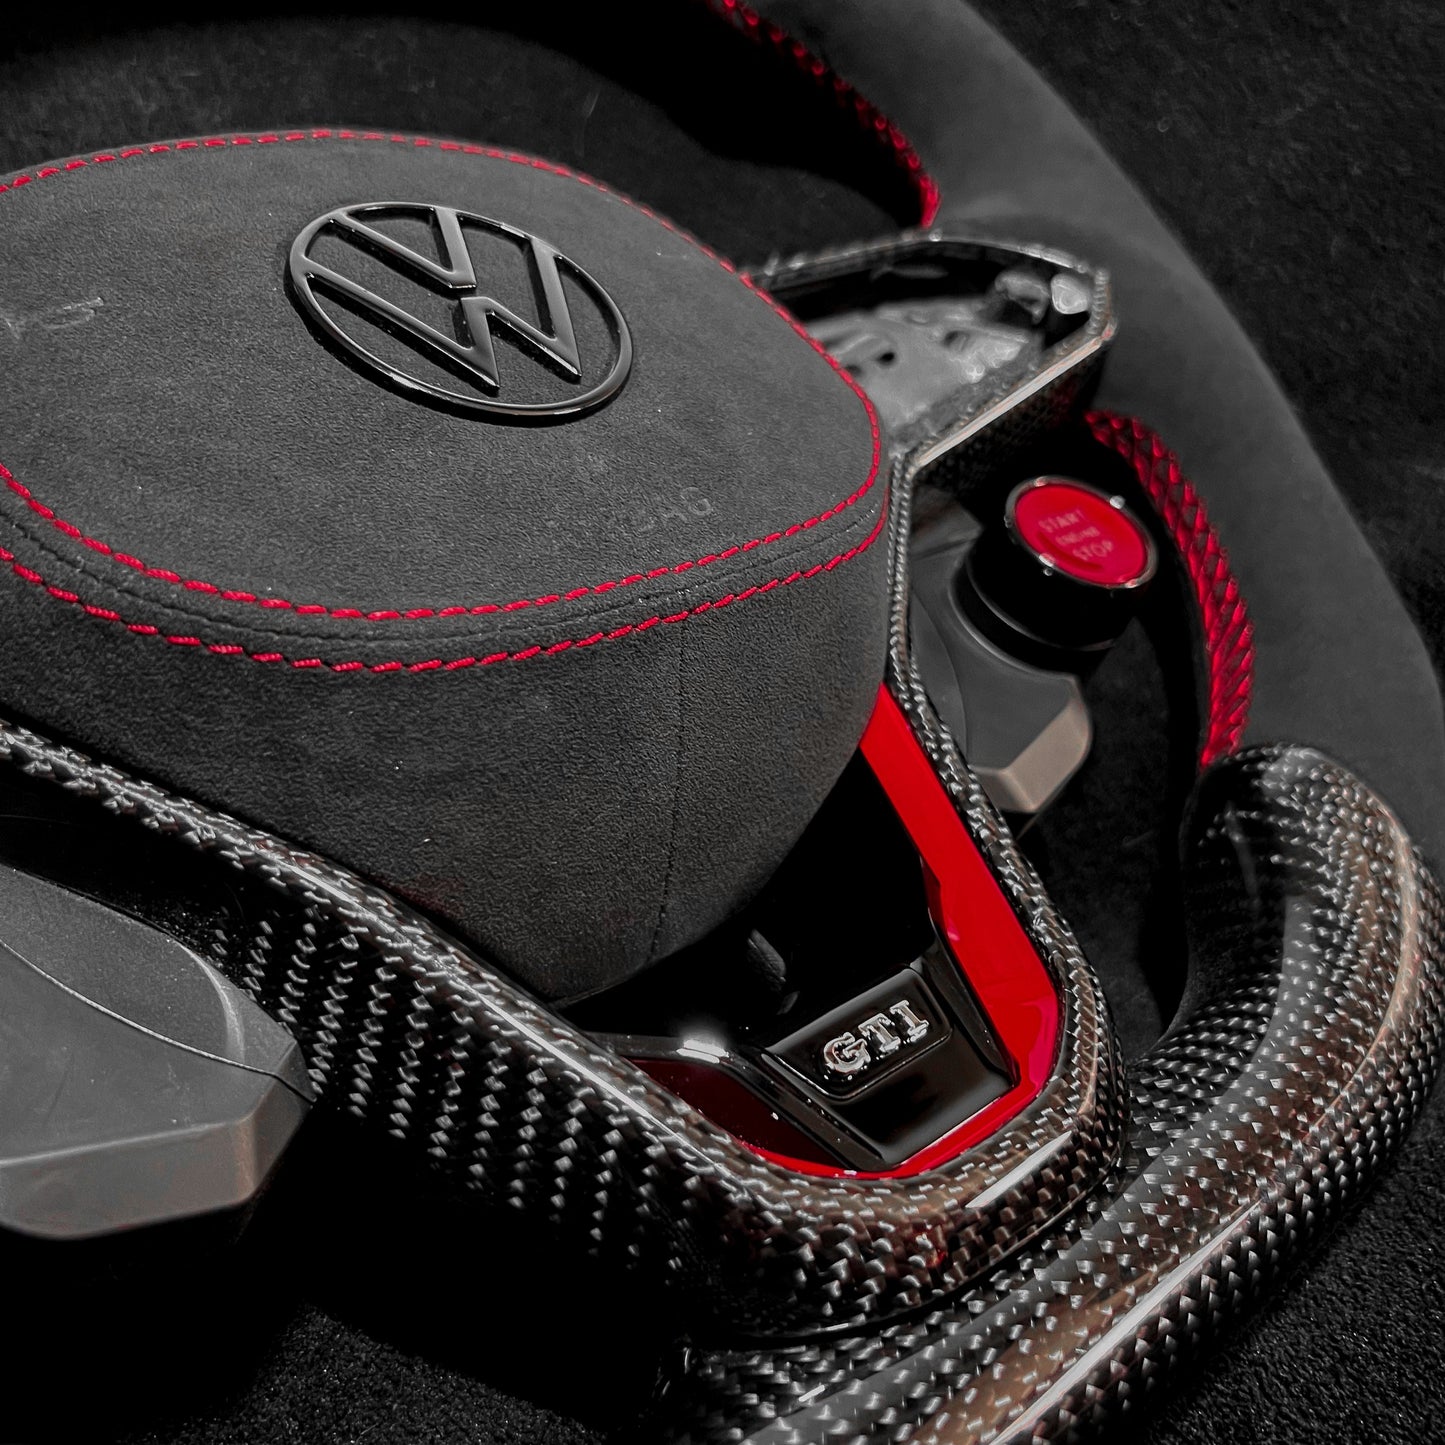 Volant Carbone personnalisable pour Volkswagen Golf 7, Golf 8… (VW)